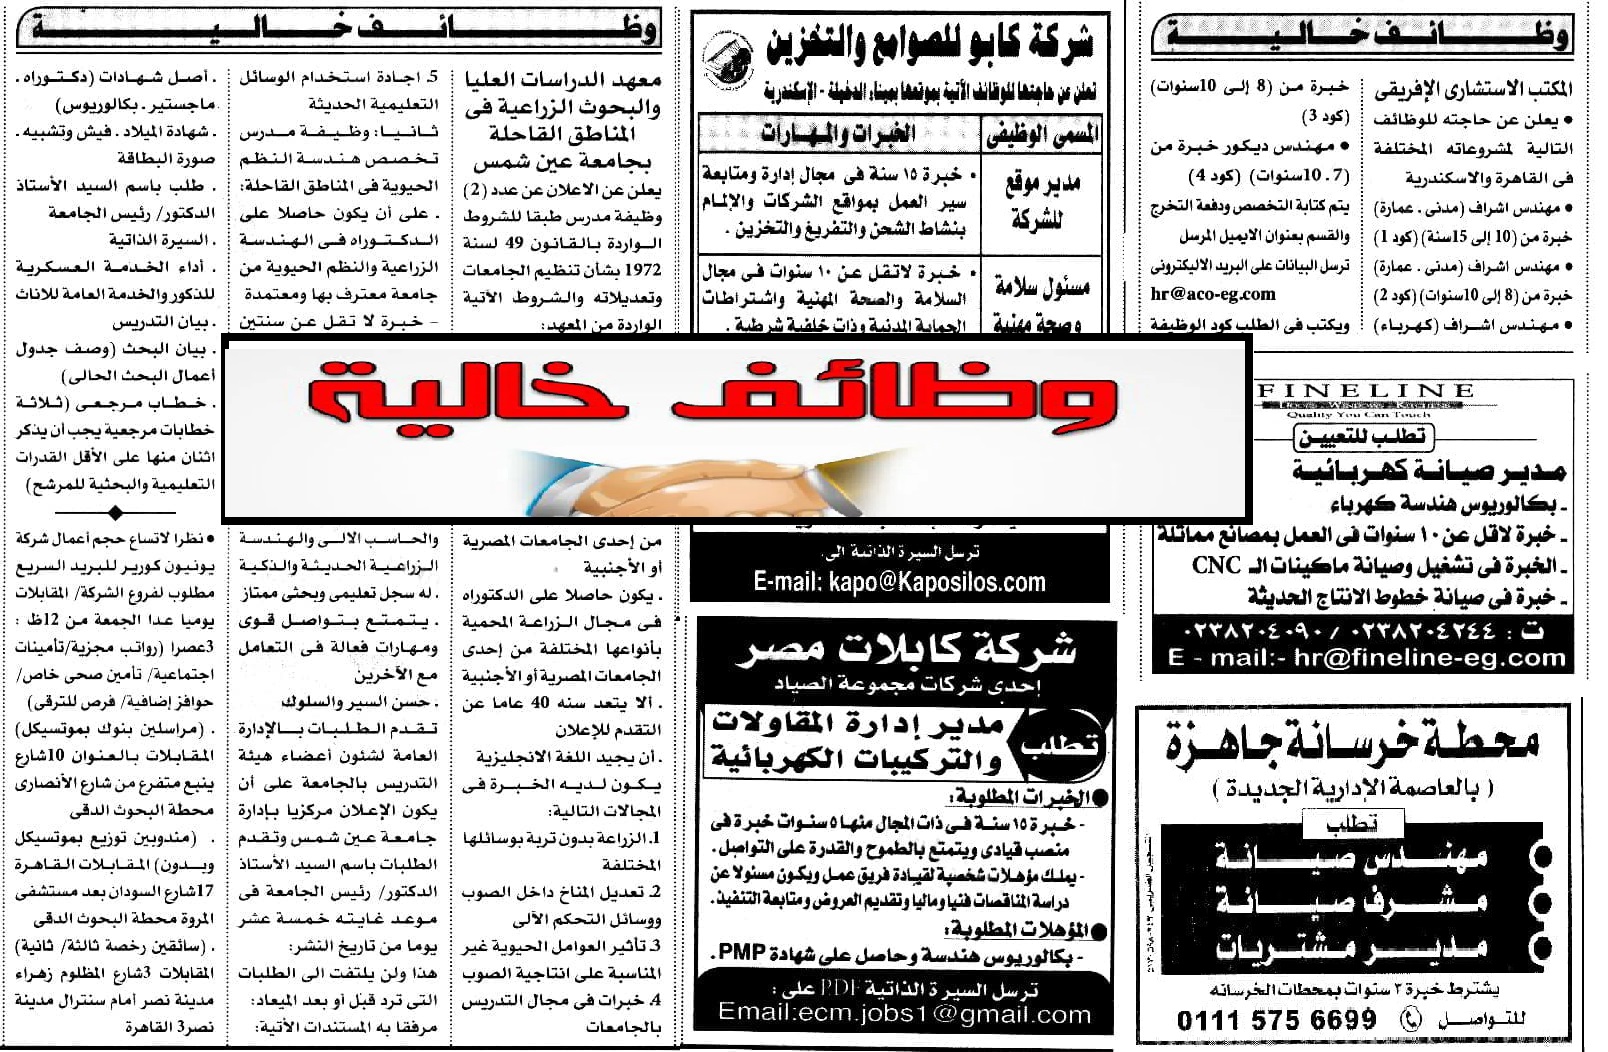 وظائف خالية للجنسين خاص وحكومي لجميع المؤهلات منشورة بجريدة الأهرام اليوم الحق الفرصة